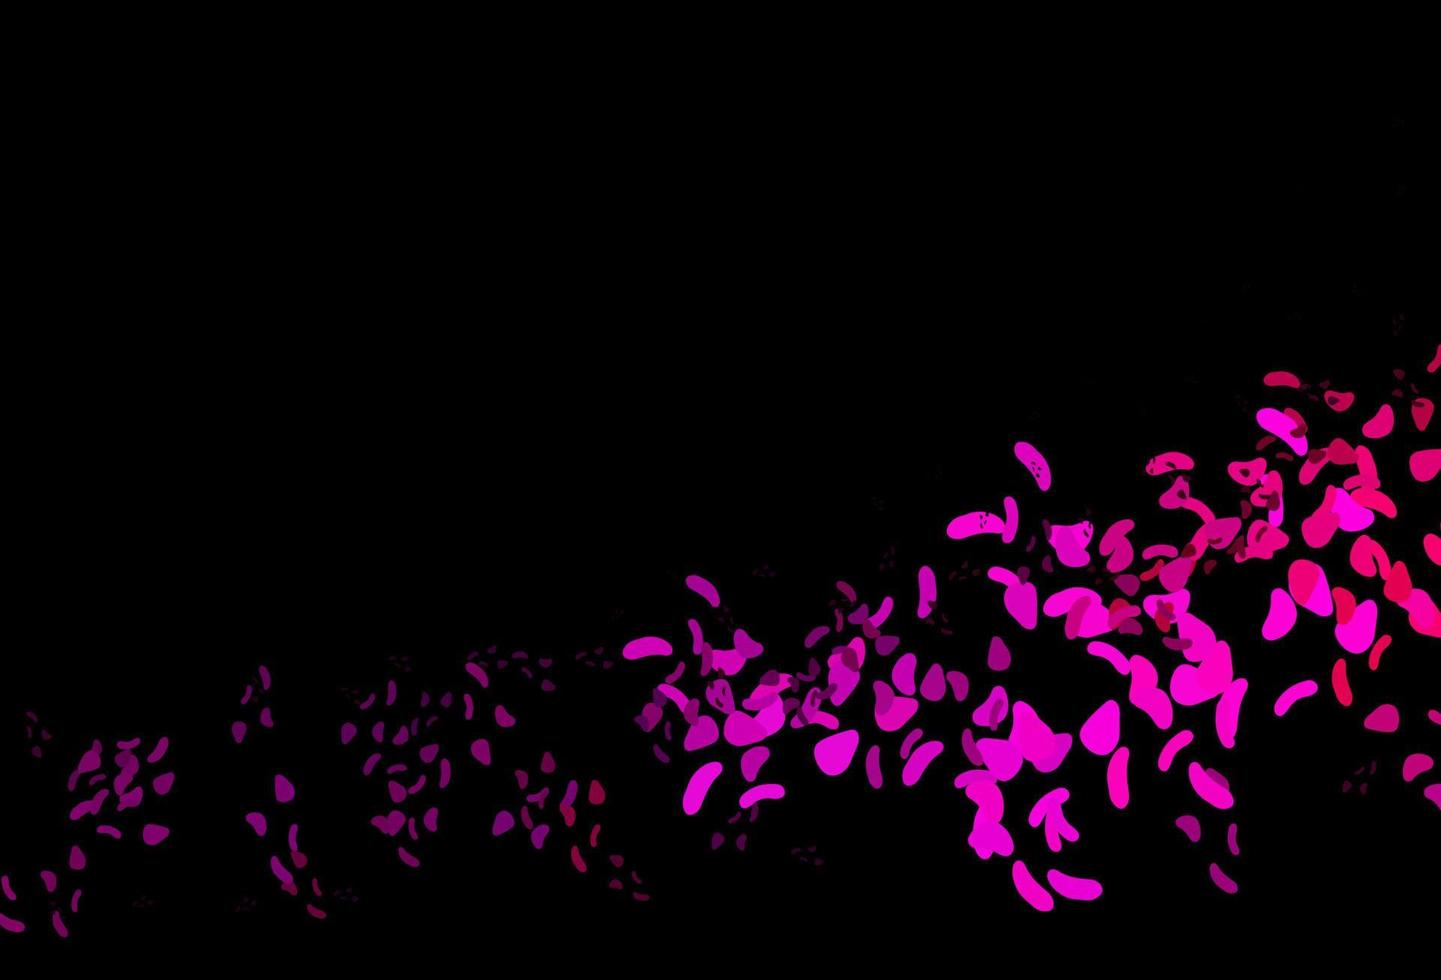 mörklila, rosa vektormall med memphis-former. vektor